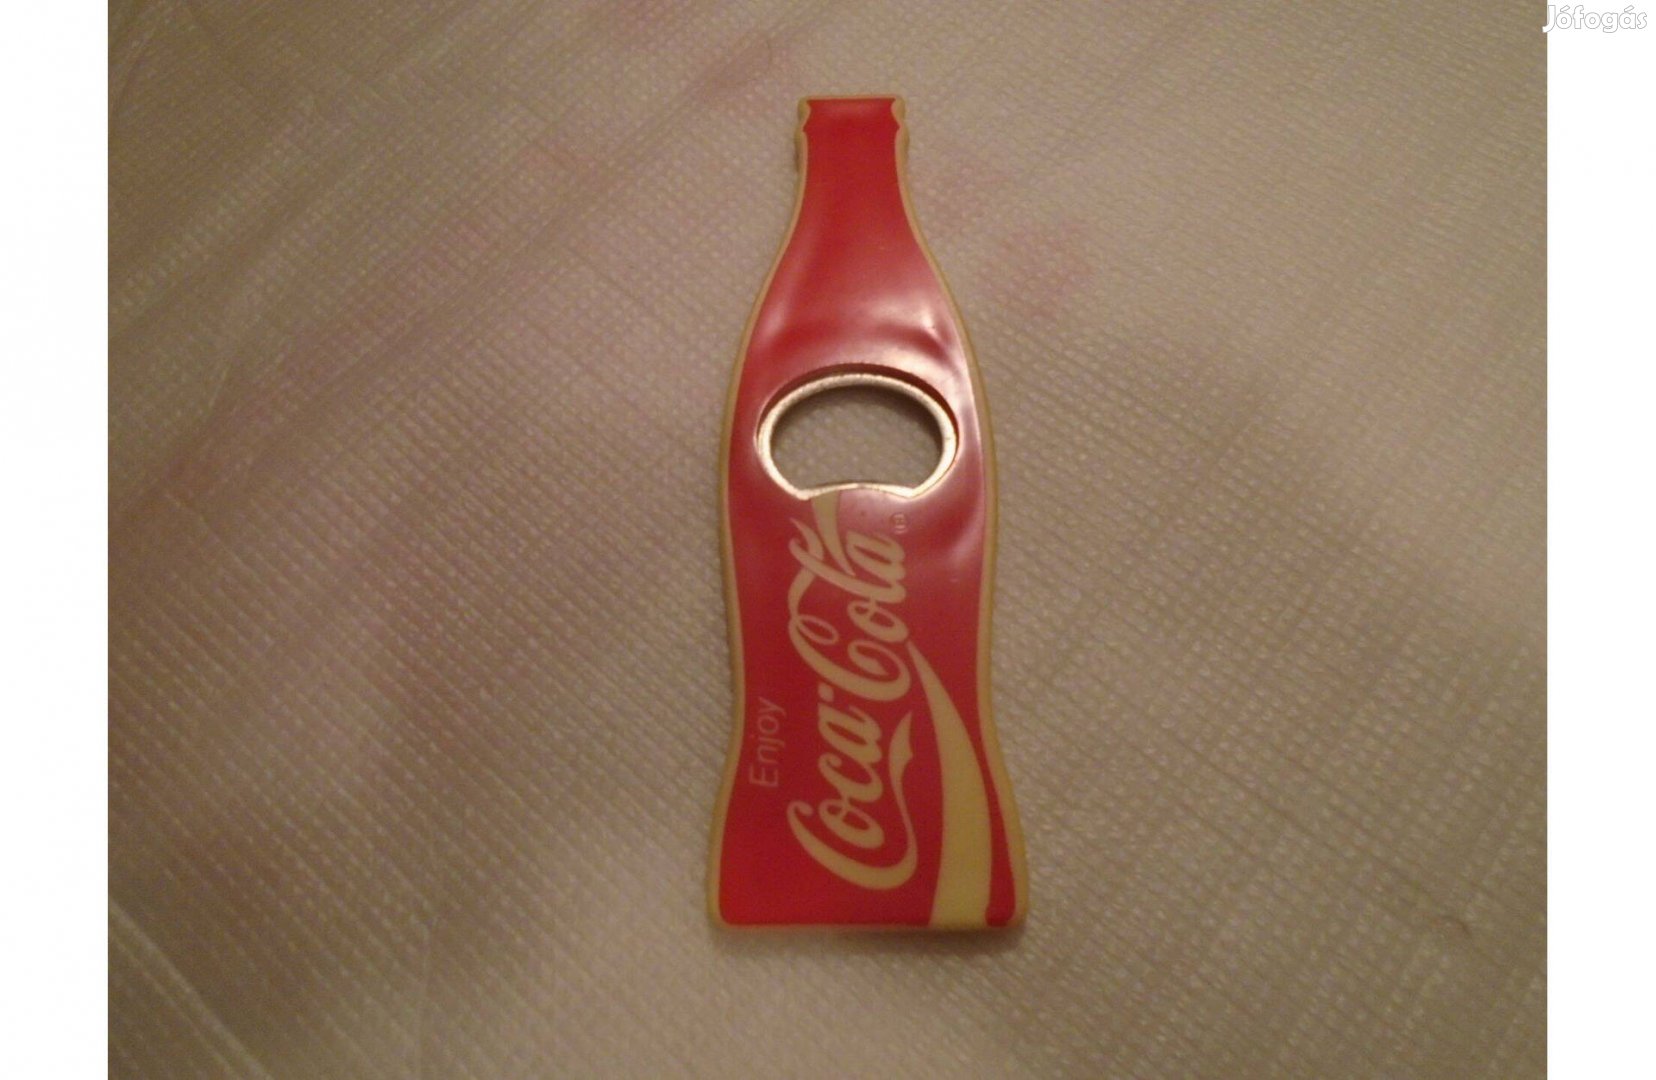 Coca-Cola Nyitó-Bontó - üvegformában - Gyűjtőknek is ajánlom!